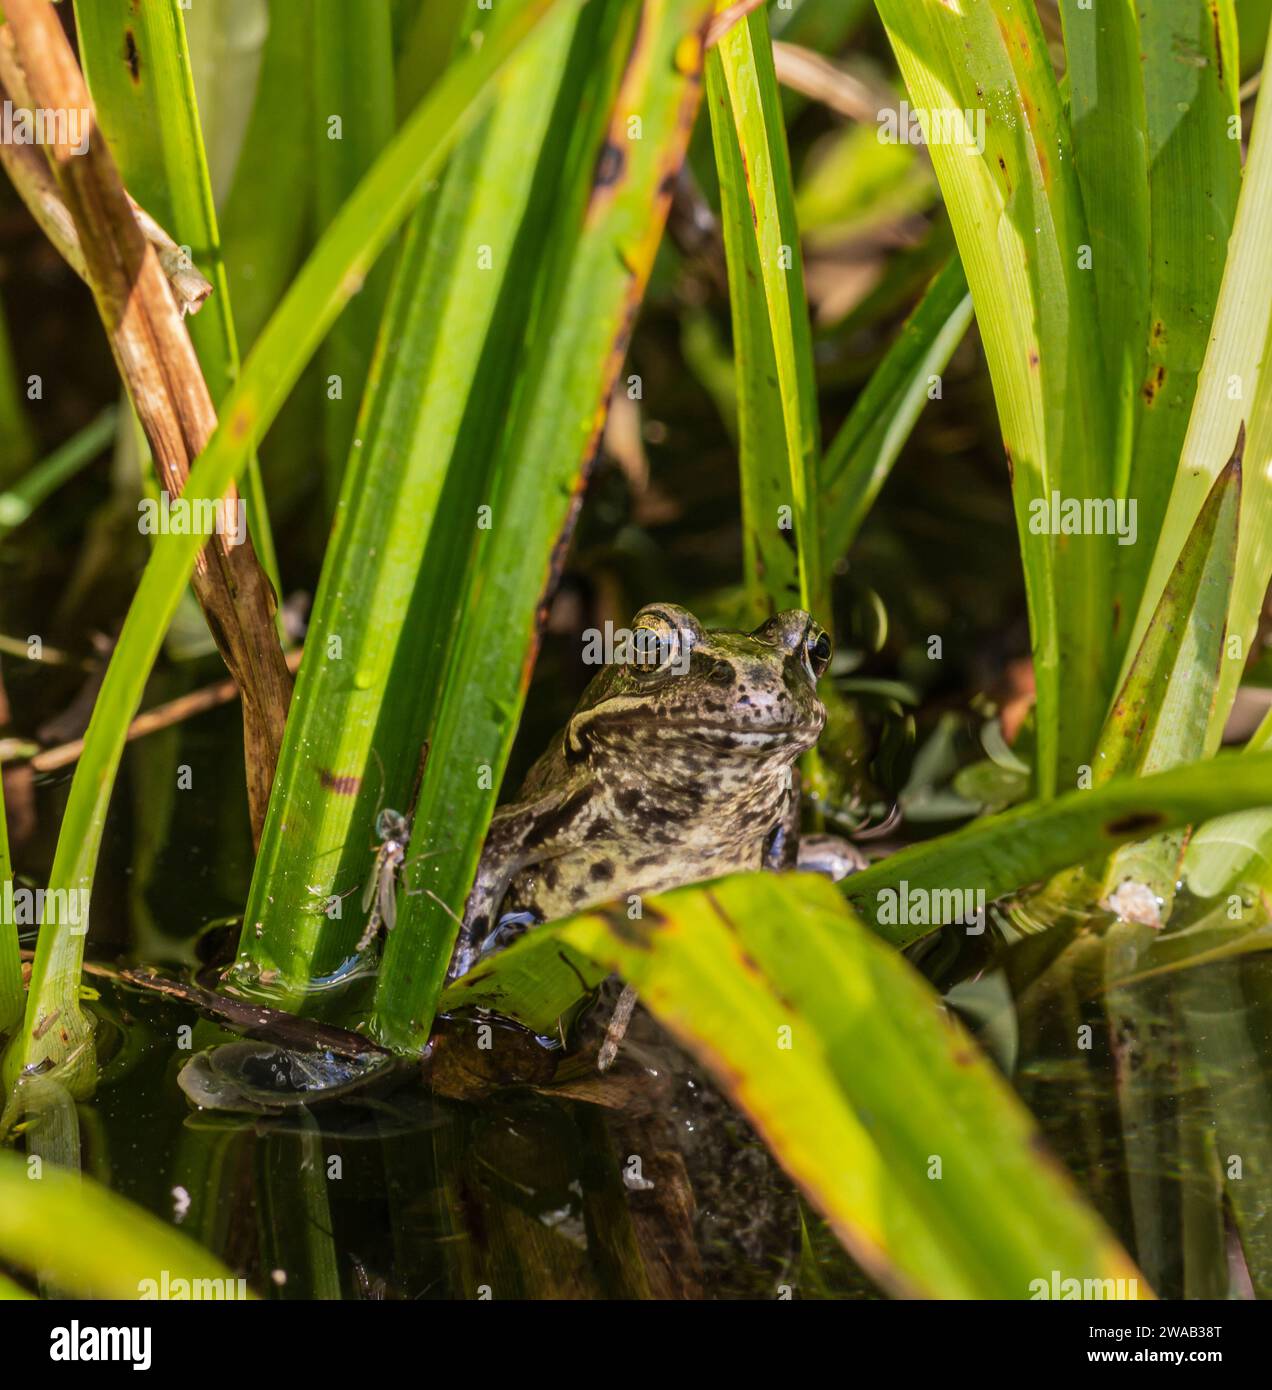 Jeune grenouille commune Rana temporaria, assis dans des roseaux sur le bord de l'eau d'un étang de jardin, mai Banque D'Images